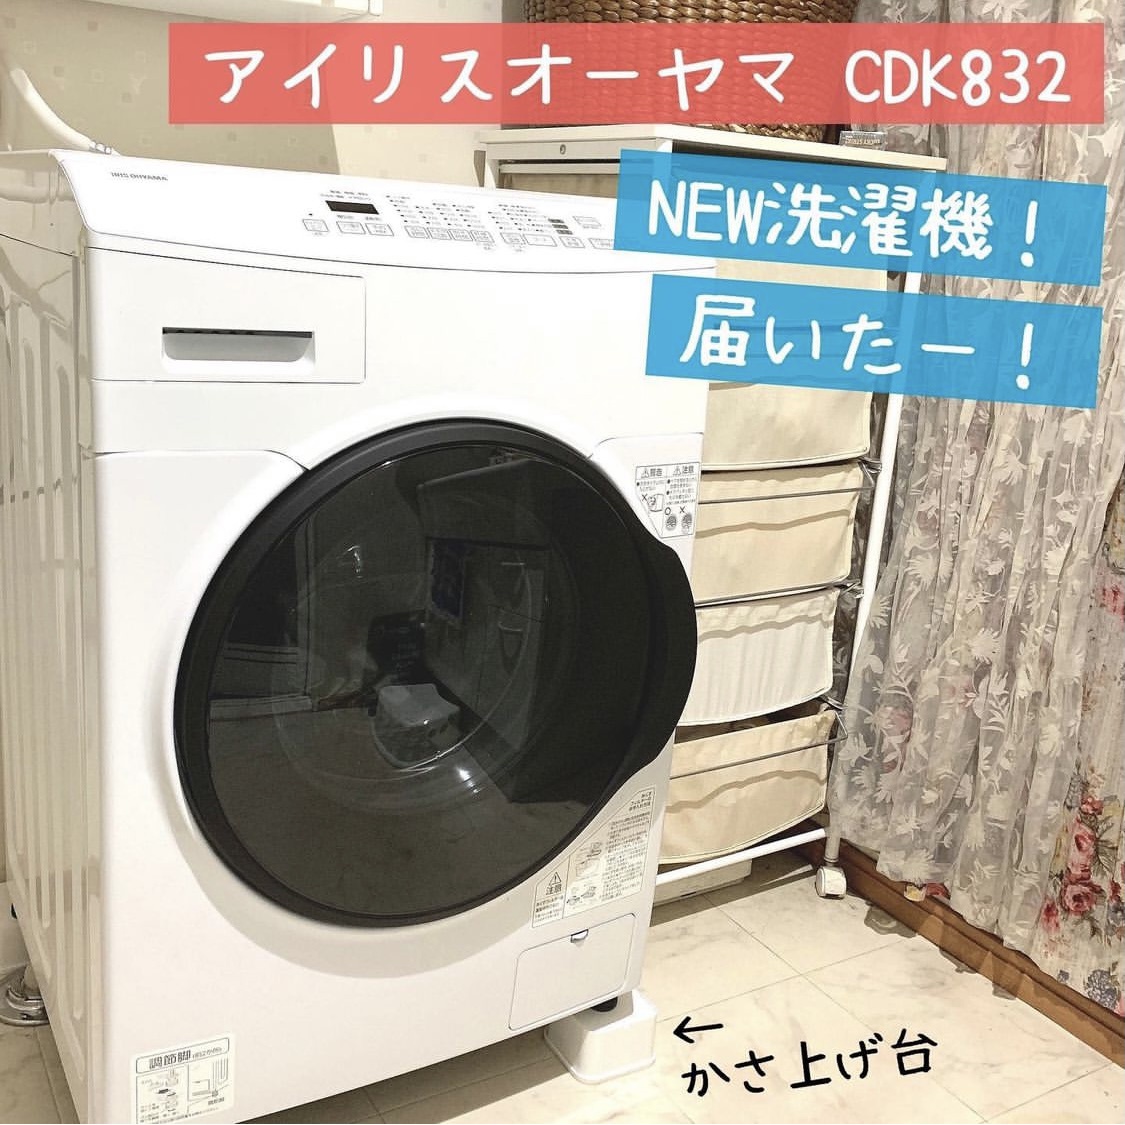 IRIS OHYAMA(アイリスオーヤマ) ドラム式洗濯機 CDK832の良い点・メリットに関するチャイコさんの口コミ画像1